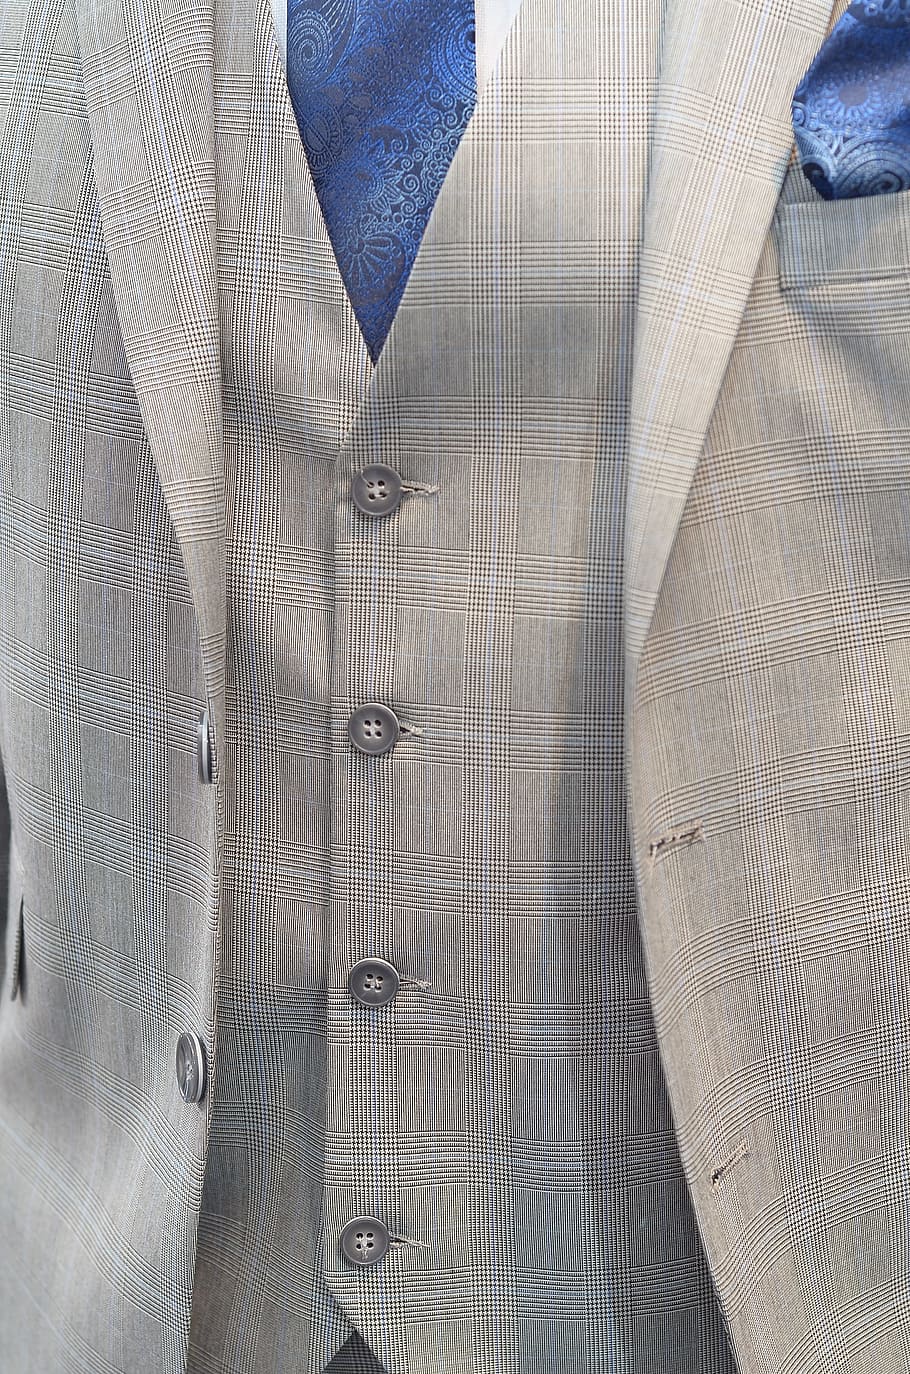 HD wallpaper: Suit, Tie, Men, business, clothing, shirt, businessman ...